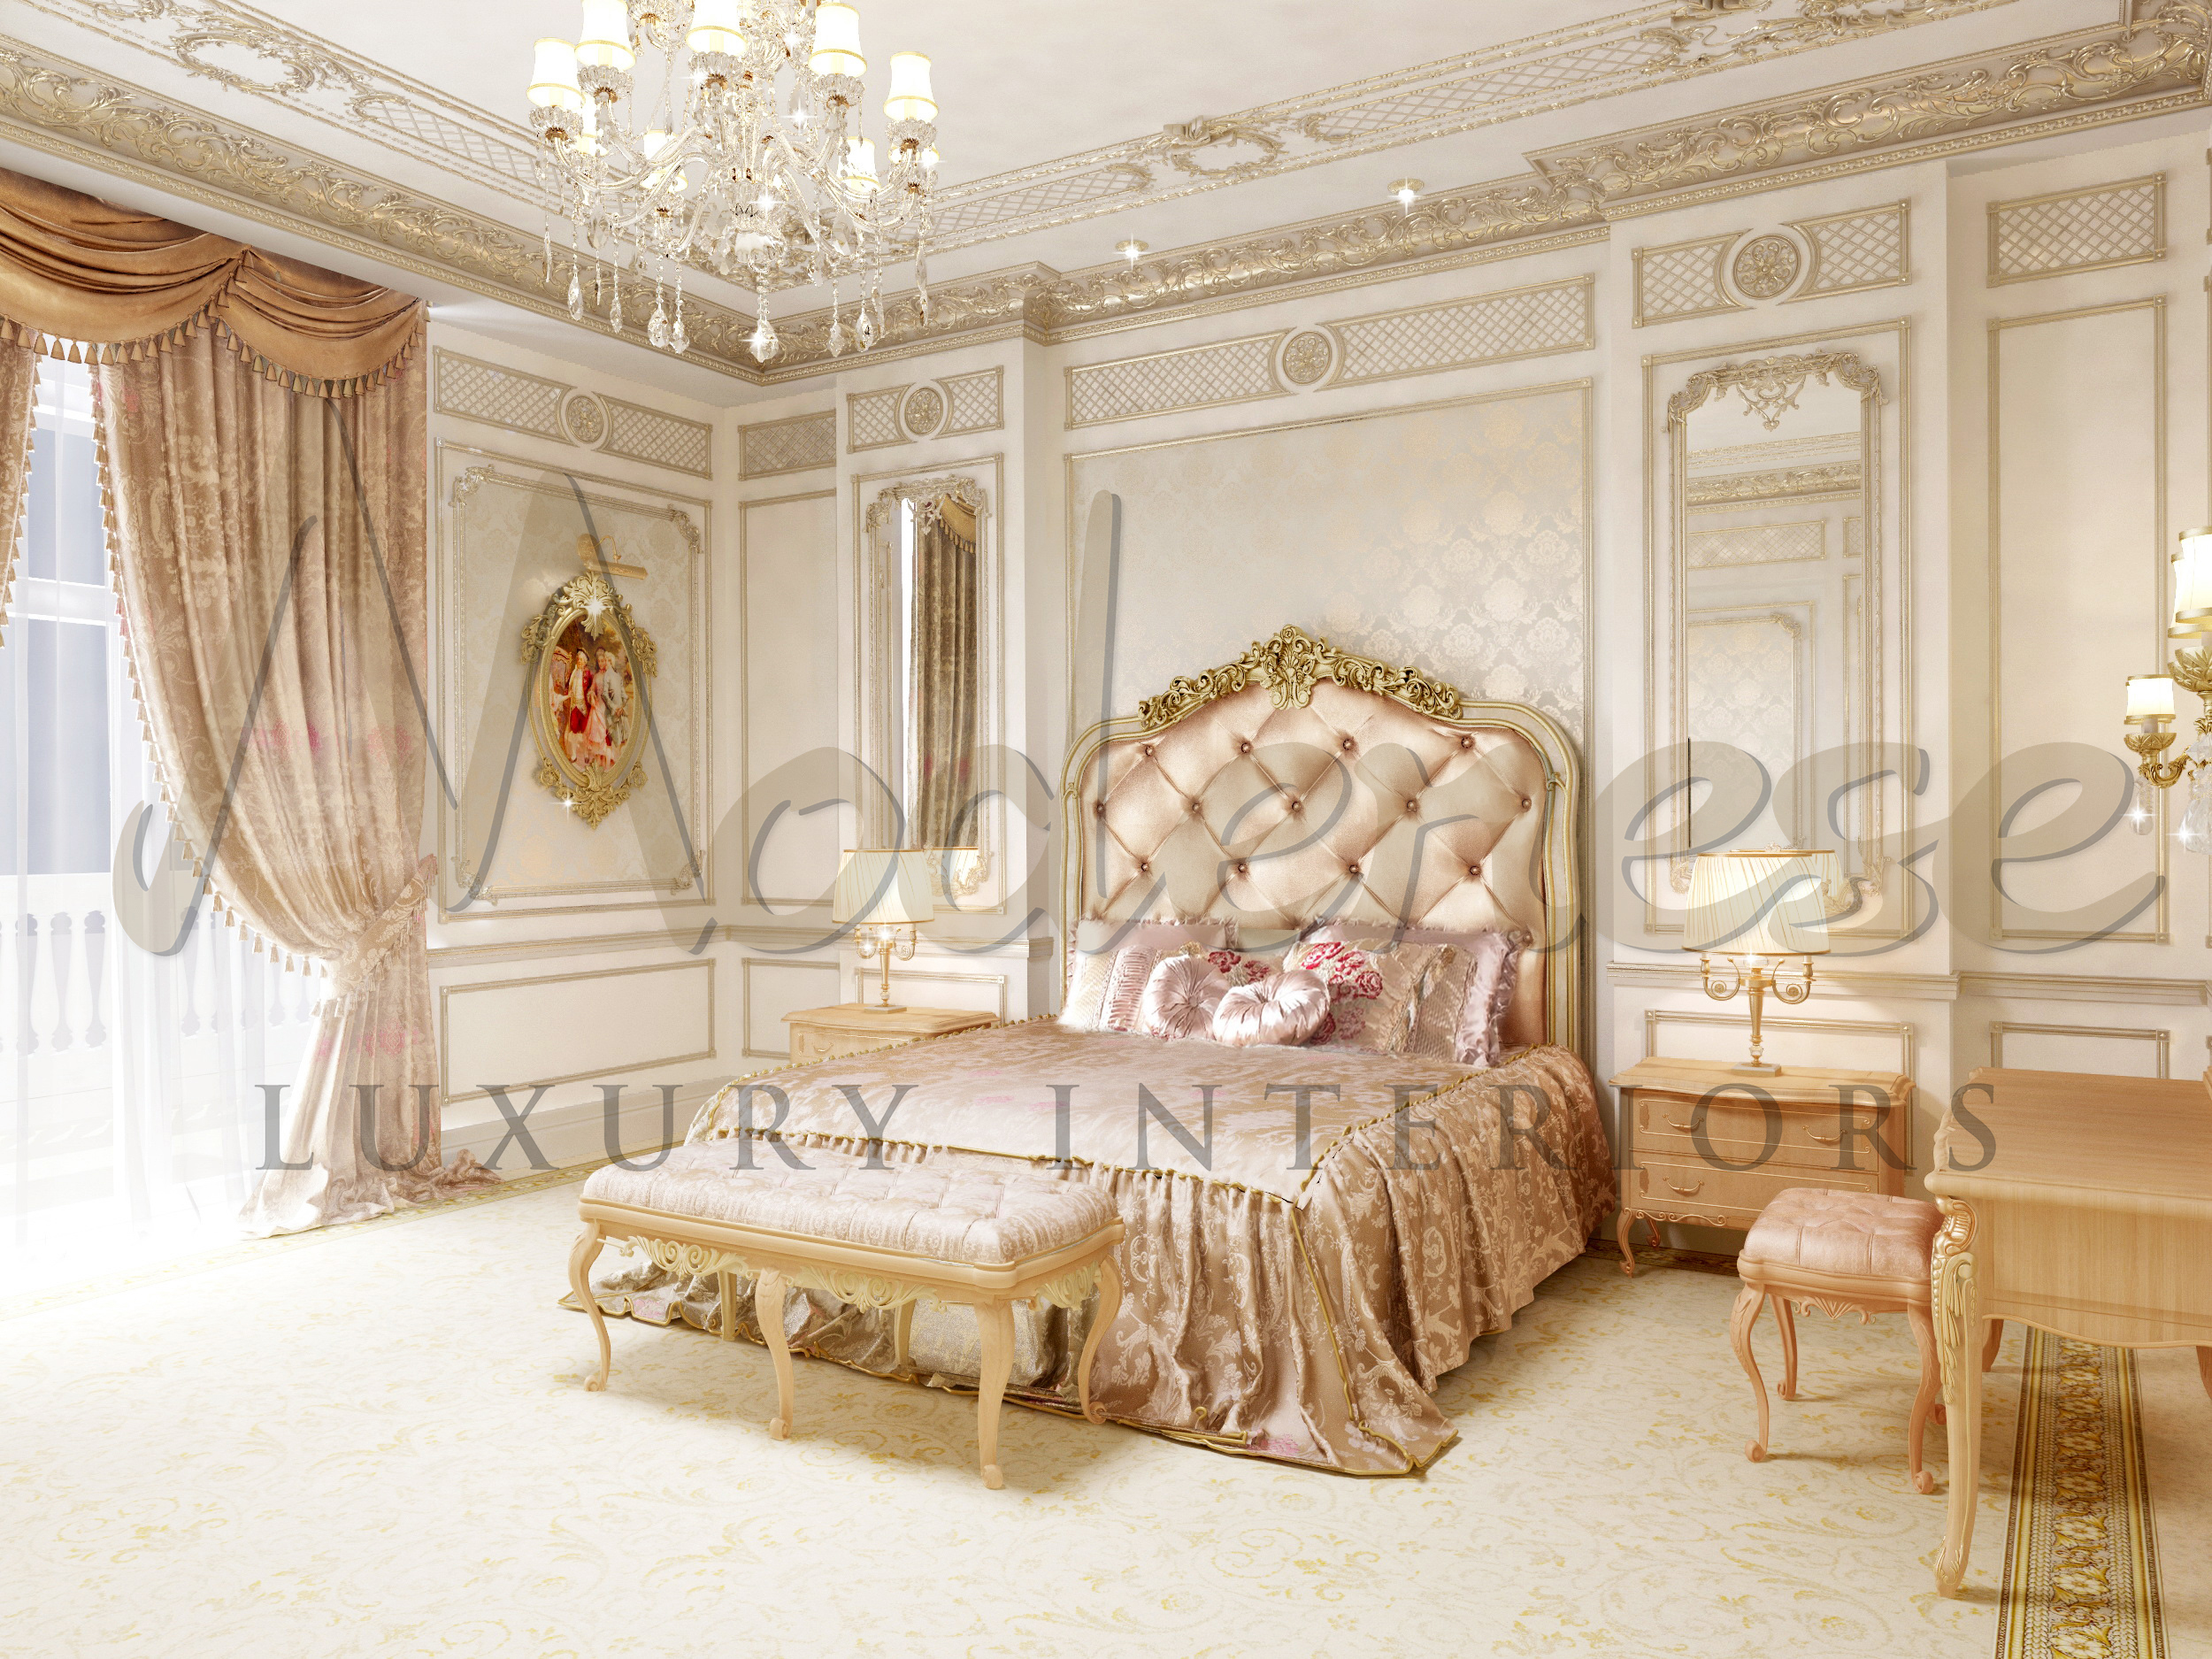 卡塔尔多哈巴洛克风格的皇家卧室设计